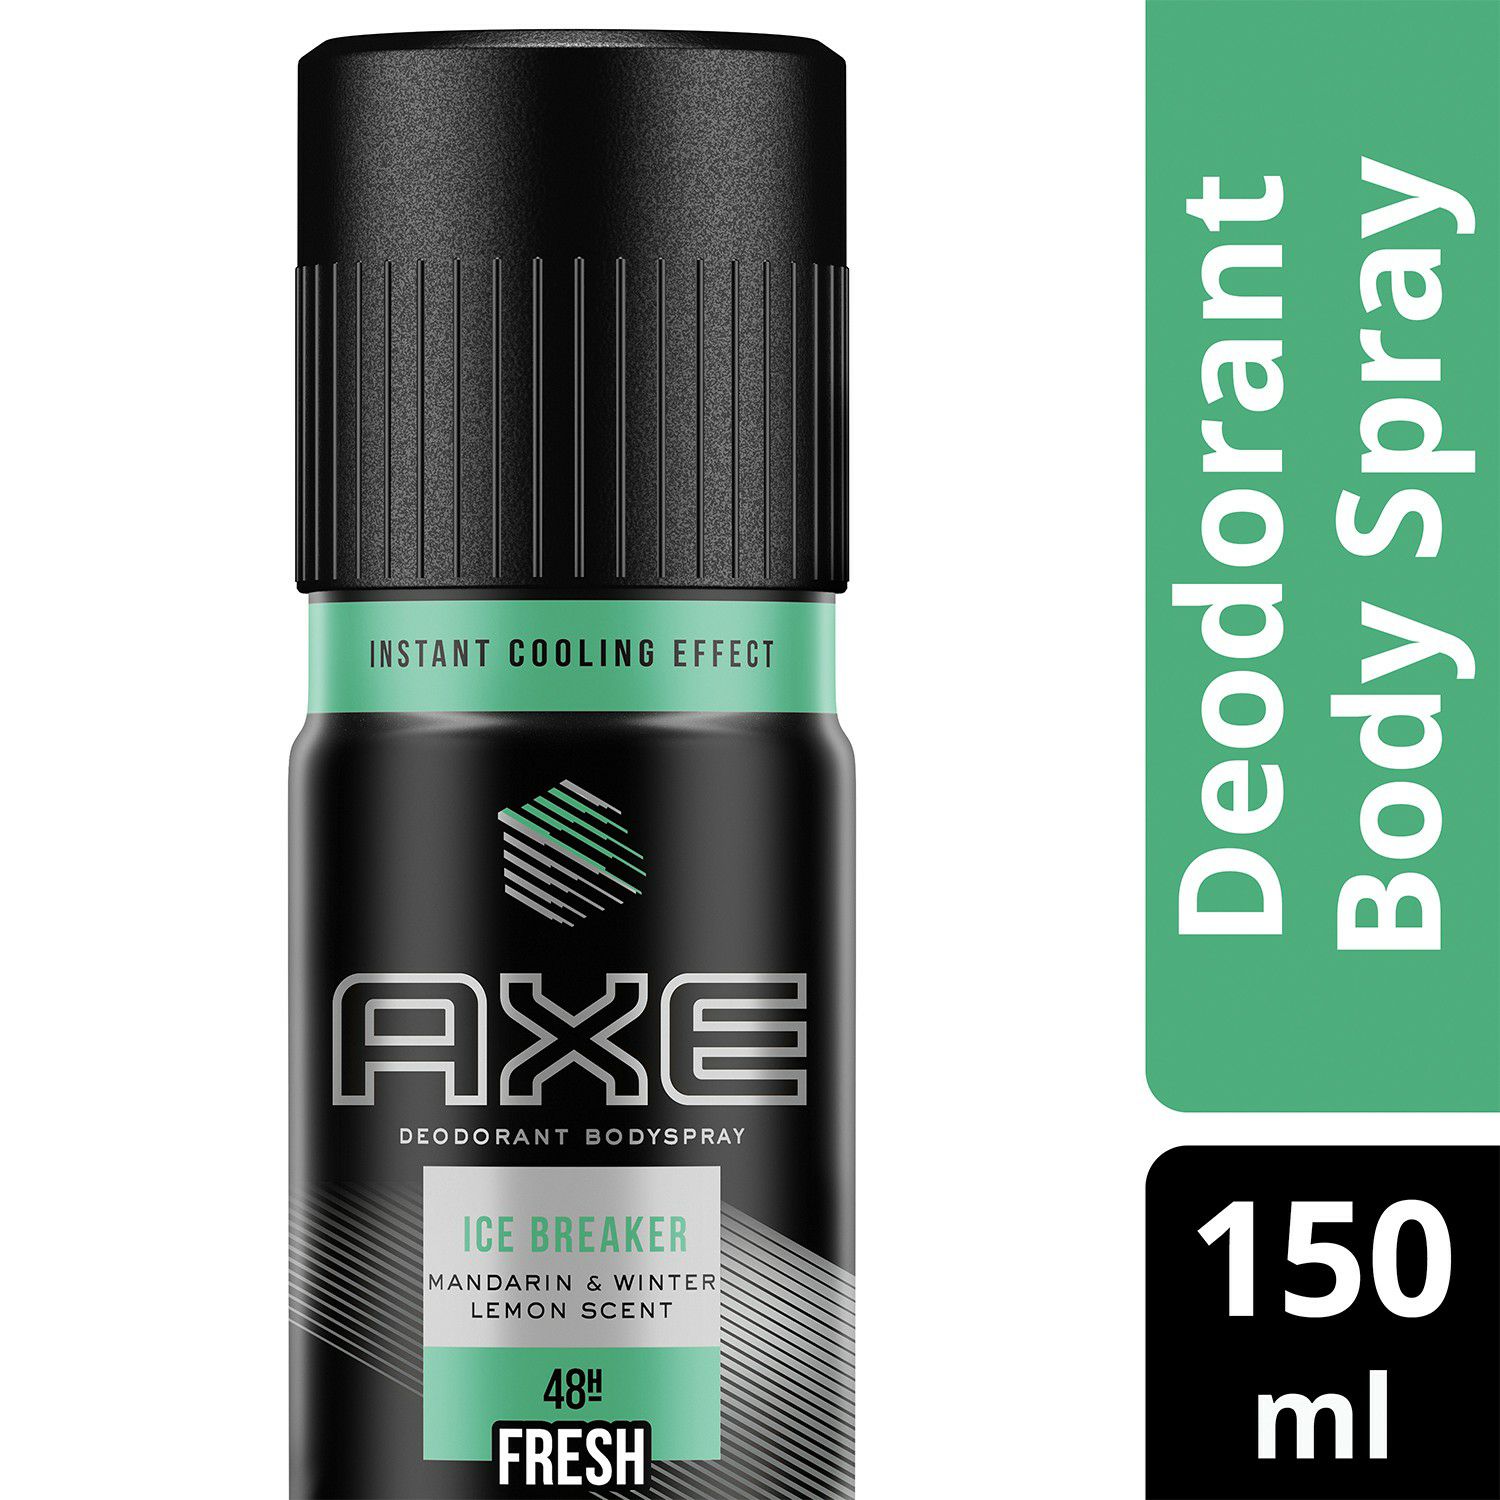 axe body spray can back